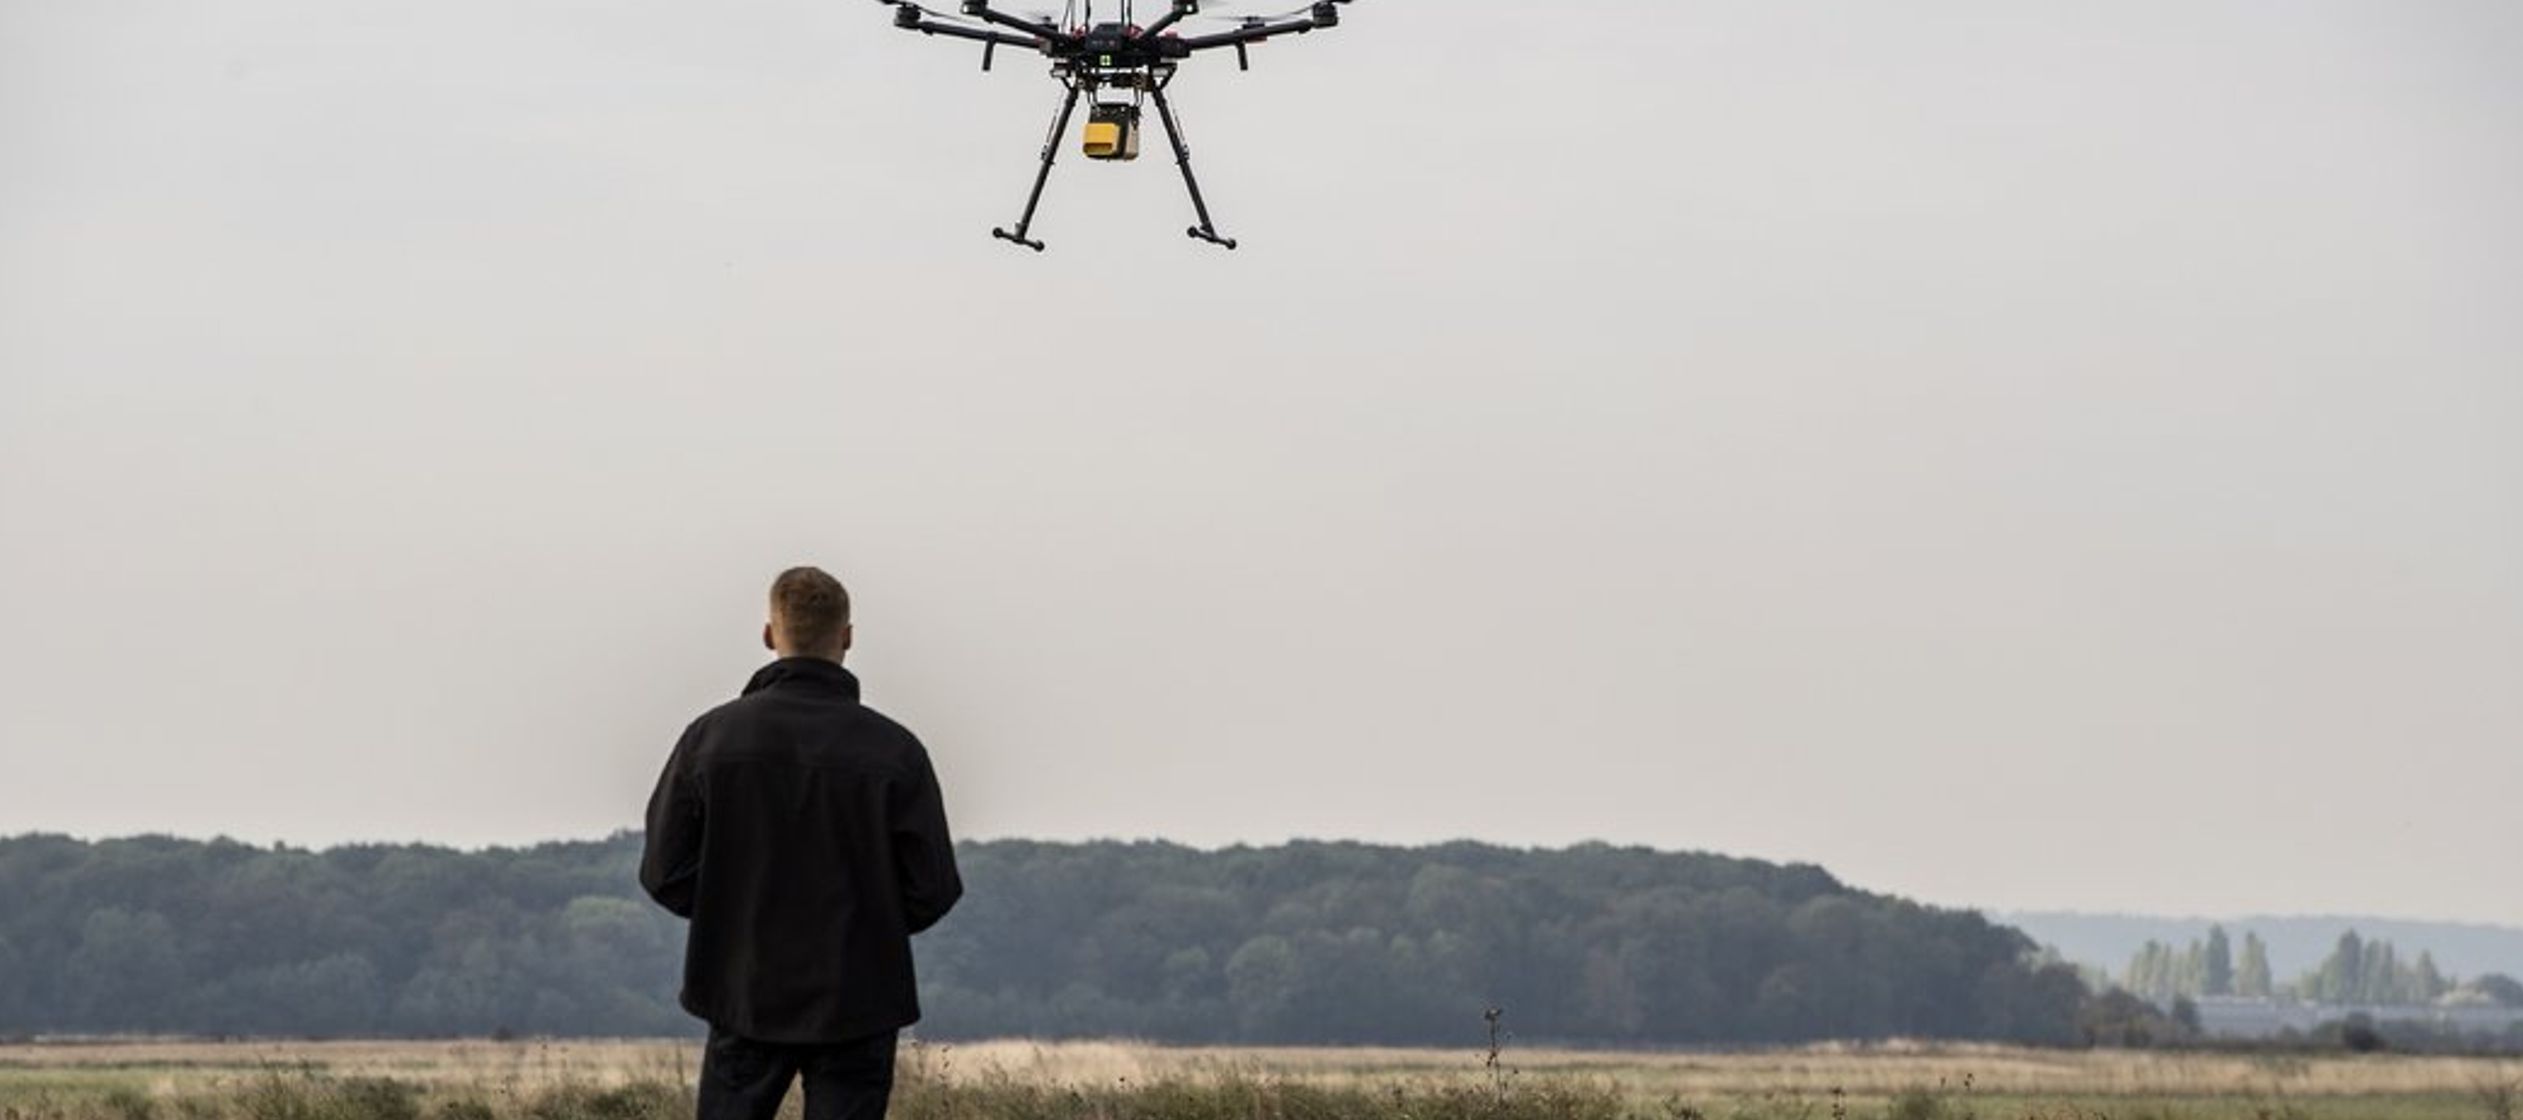 Otros participantes fabrican drones que pueden ayudar a la policía a inspeccionar cables de...